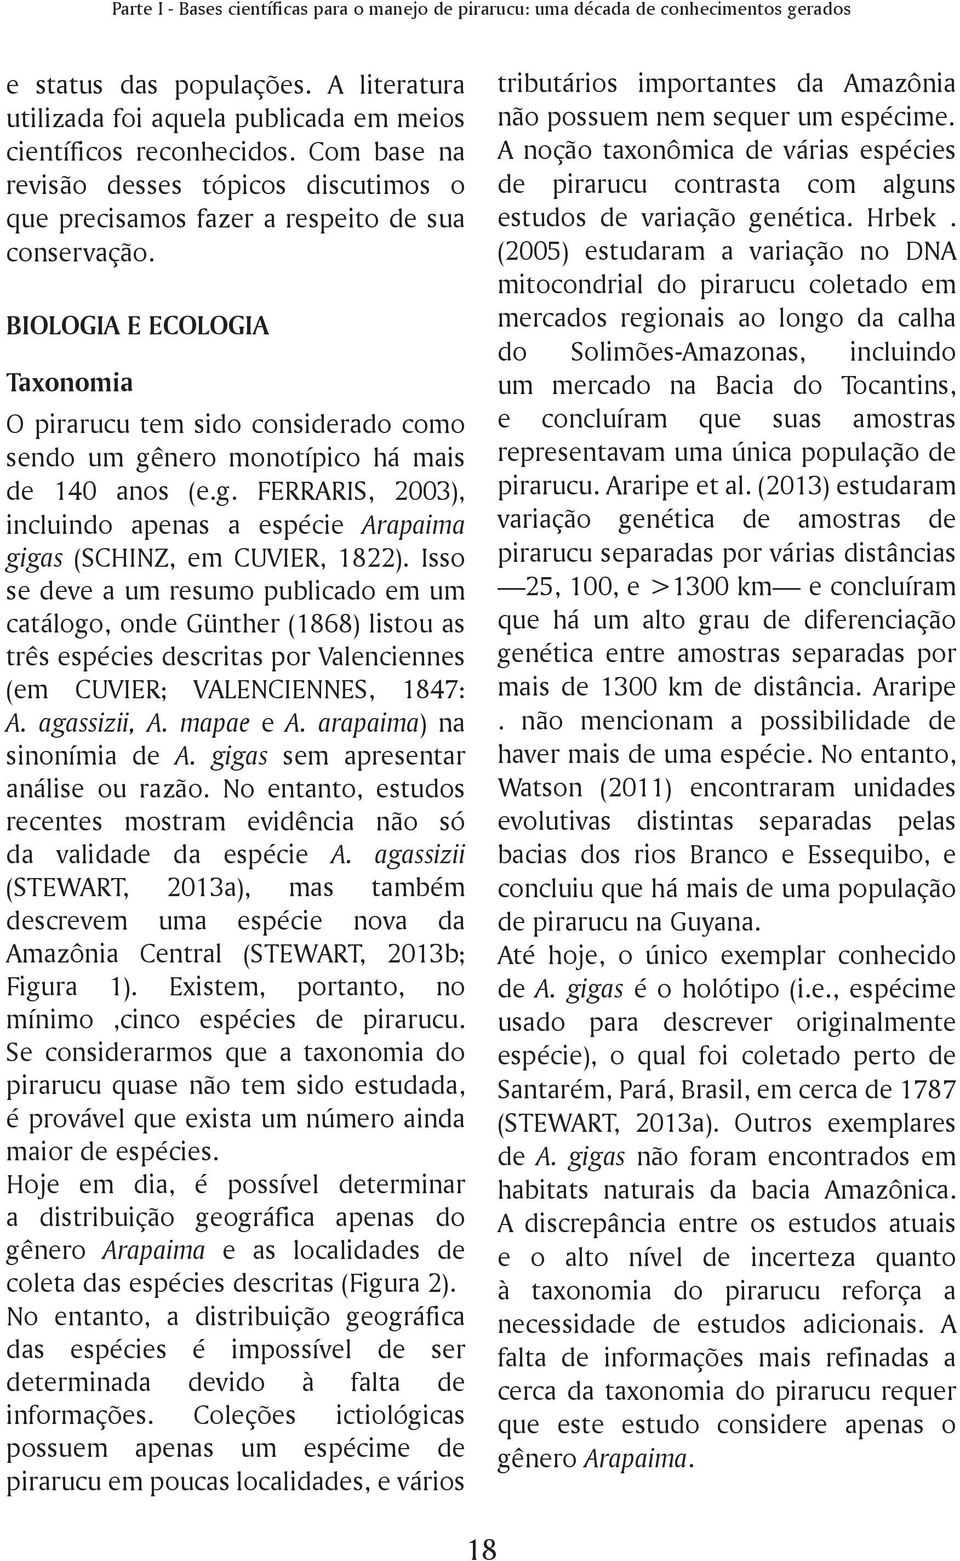 BIOLOGIA E ECOLOGIA Taxonomia O pirarucu tem sido considerado como sendo um gênero monotípico há mais de 140 anos (e.g. FERRARIS, 2003), incluindo apenas a espécie Arapaima gigas (SCHINZ, em CUVIER, 1822).